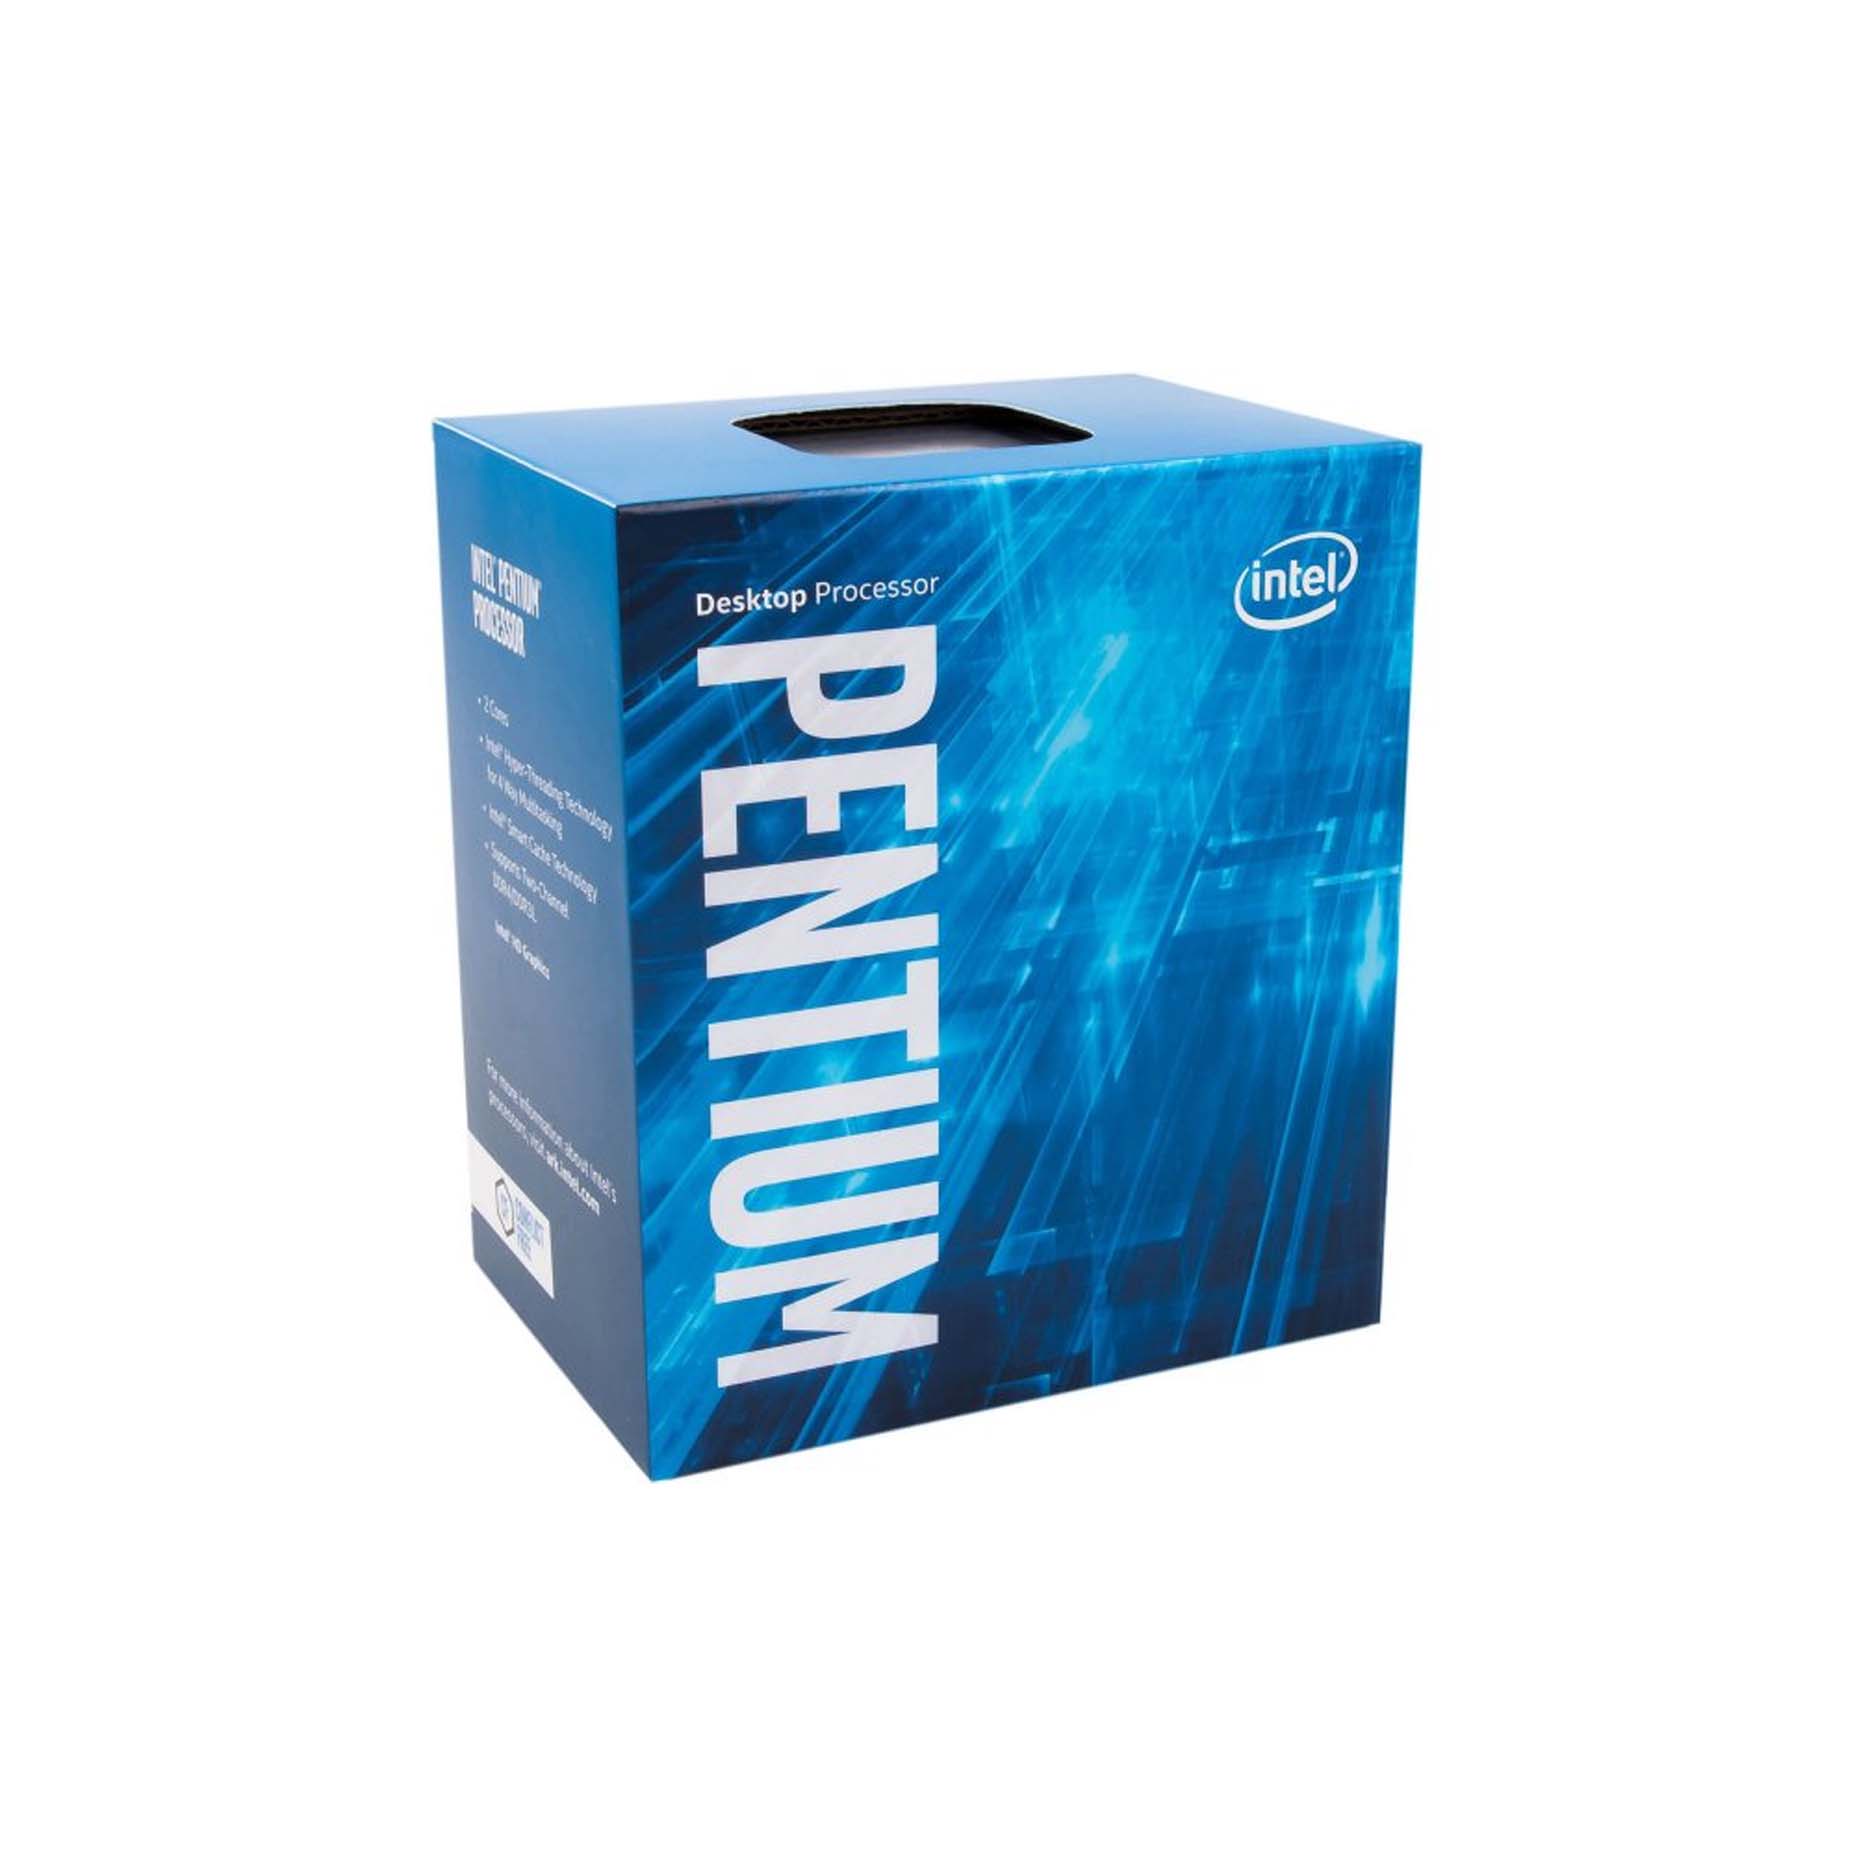 Harga Jual Processor Intel Pentium Processor G4560 3M Cache 3.50 GHz